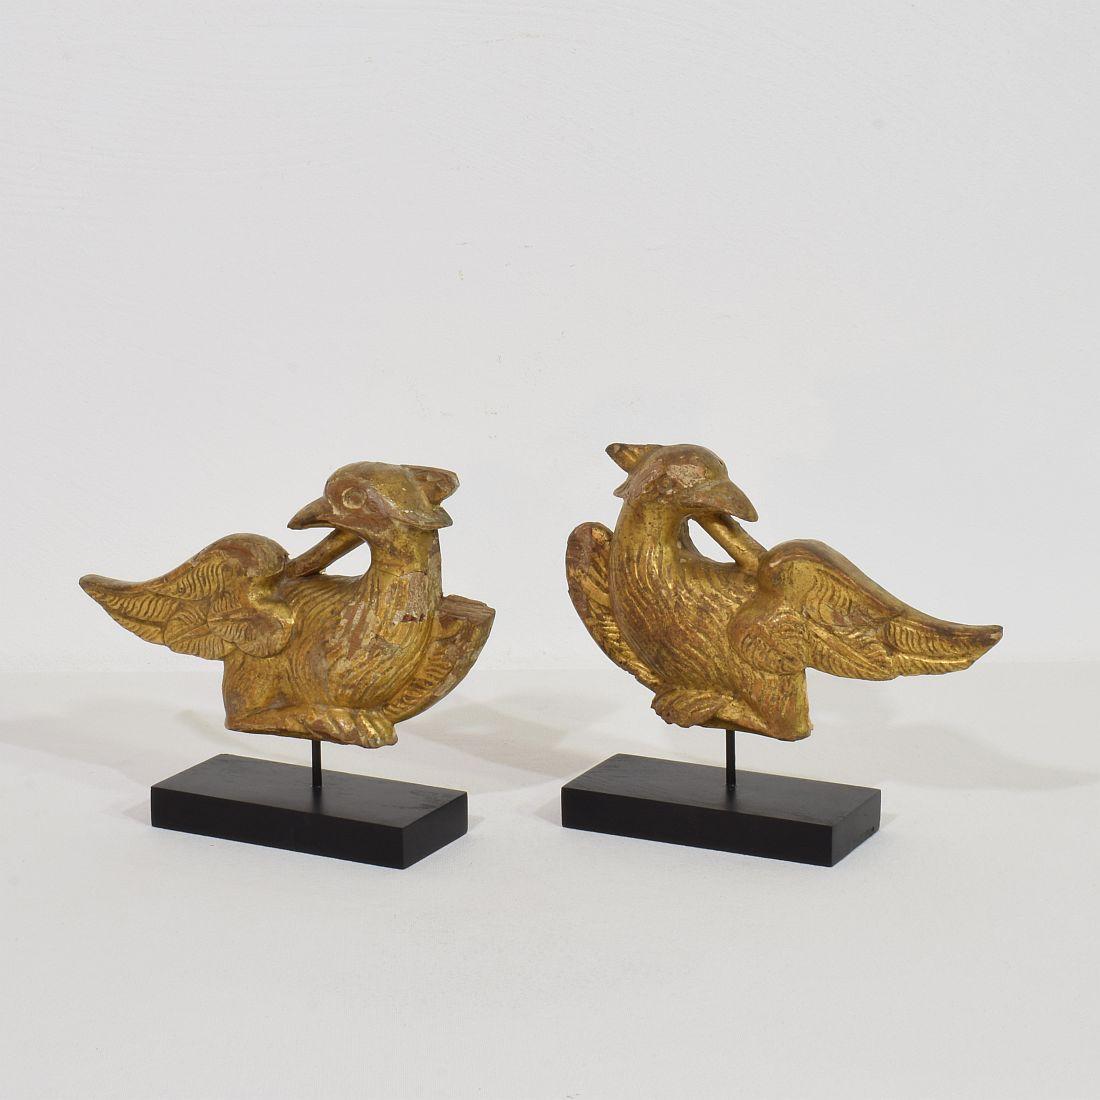 Magnifique paire de fragments d'oiseaux en bois doré sculptés à la main. 
France vers 1805-1820 . Usures et petites pertes
Les mesures sont individuelles et incluent la base en bois.